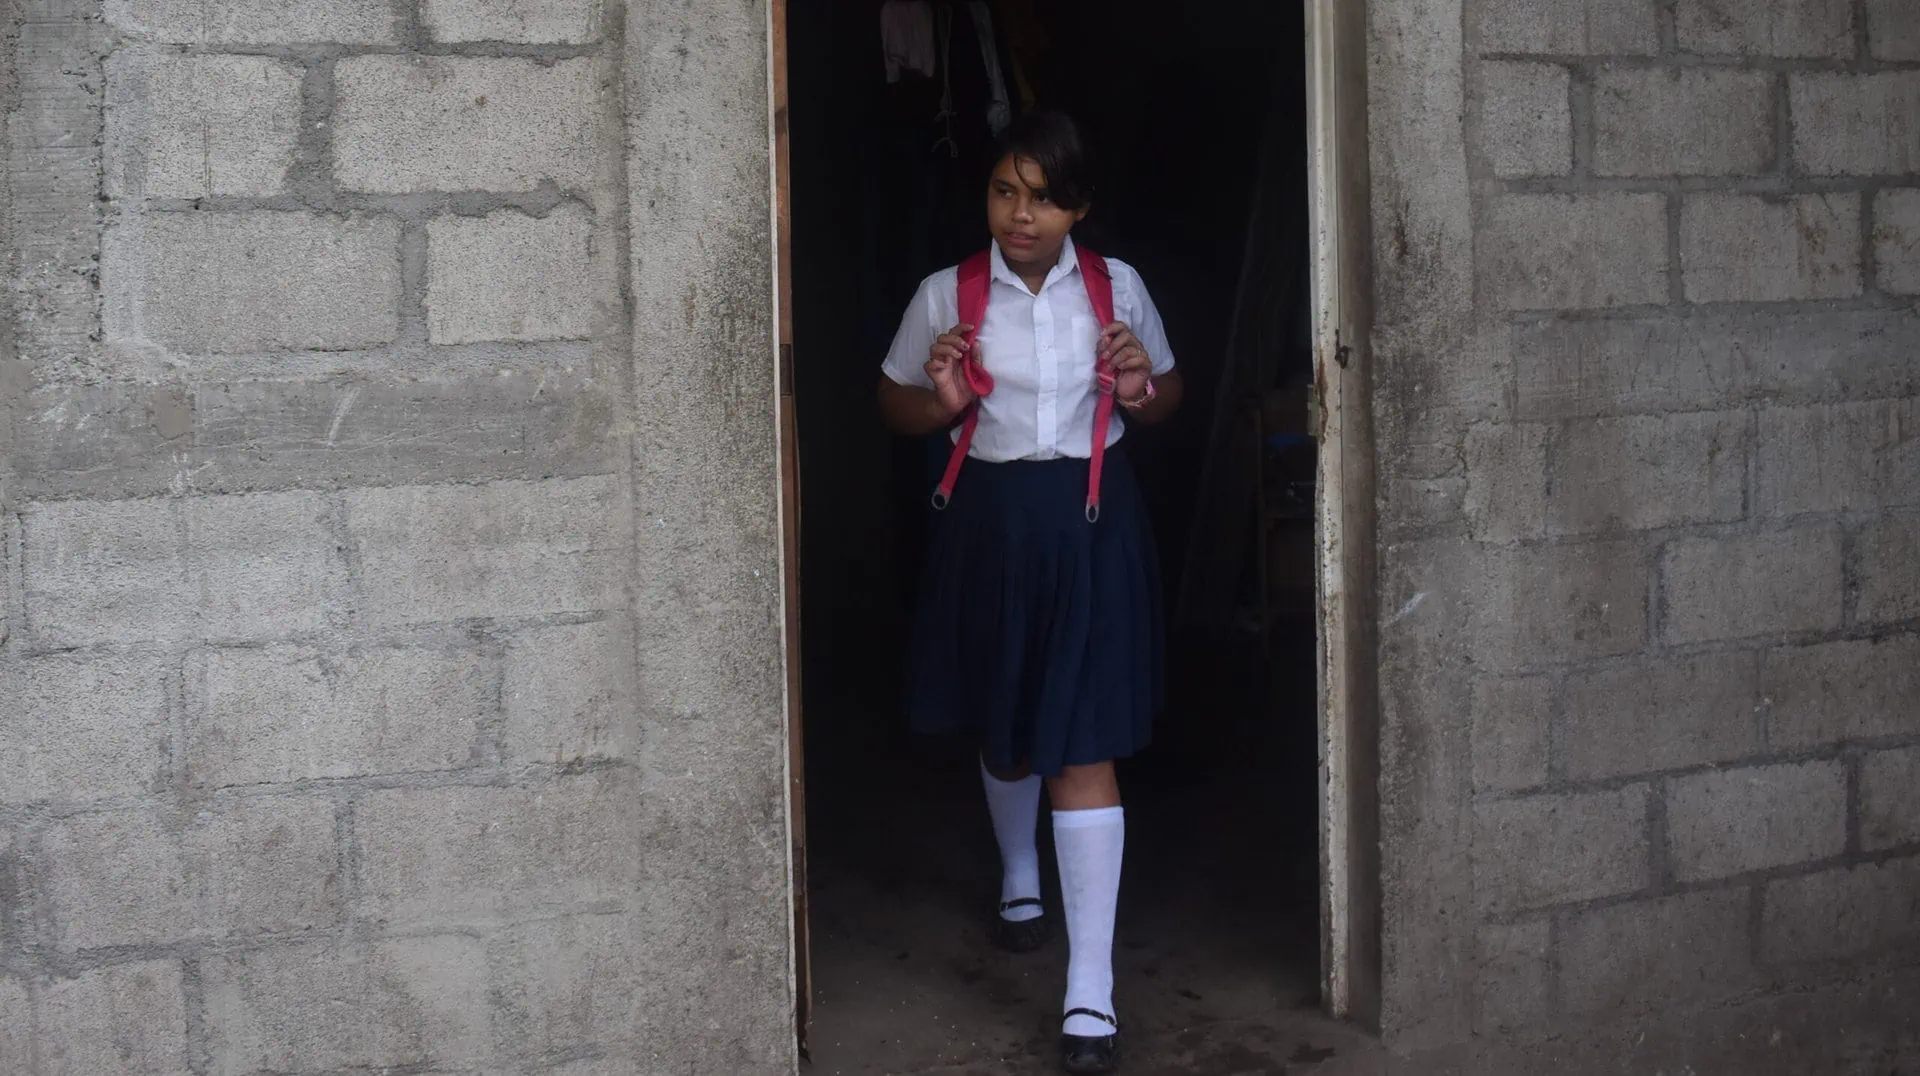 A-girl-in-school-uniform-standing-in-a-doorway.